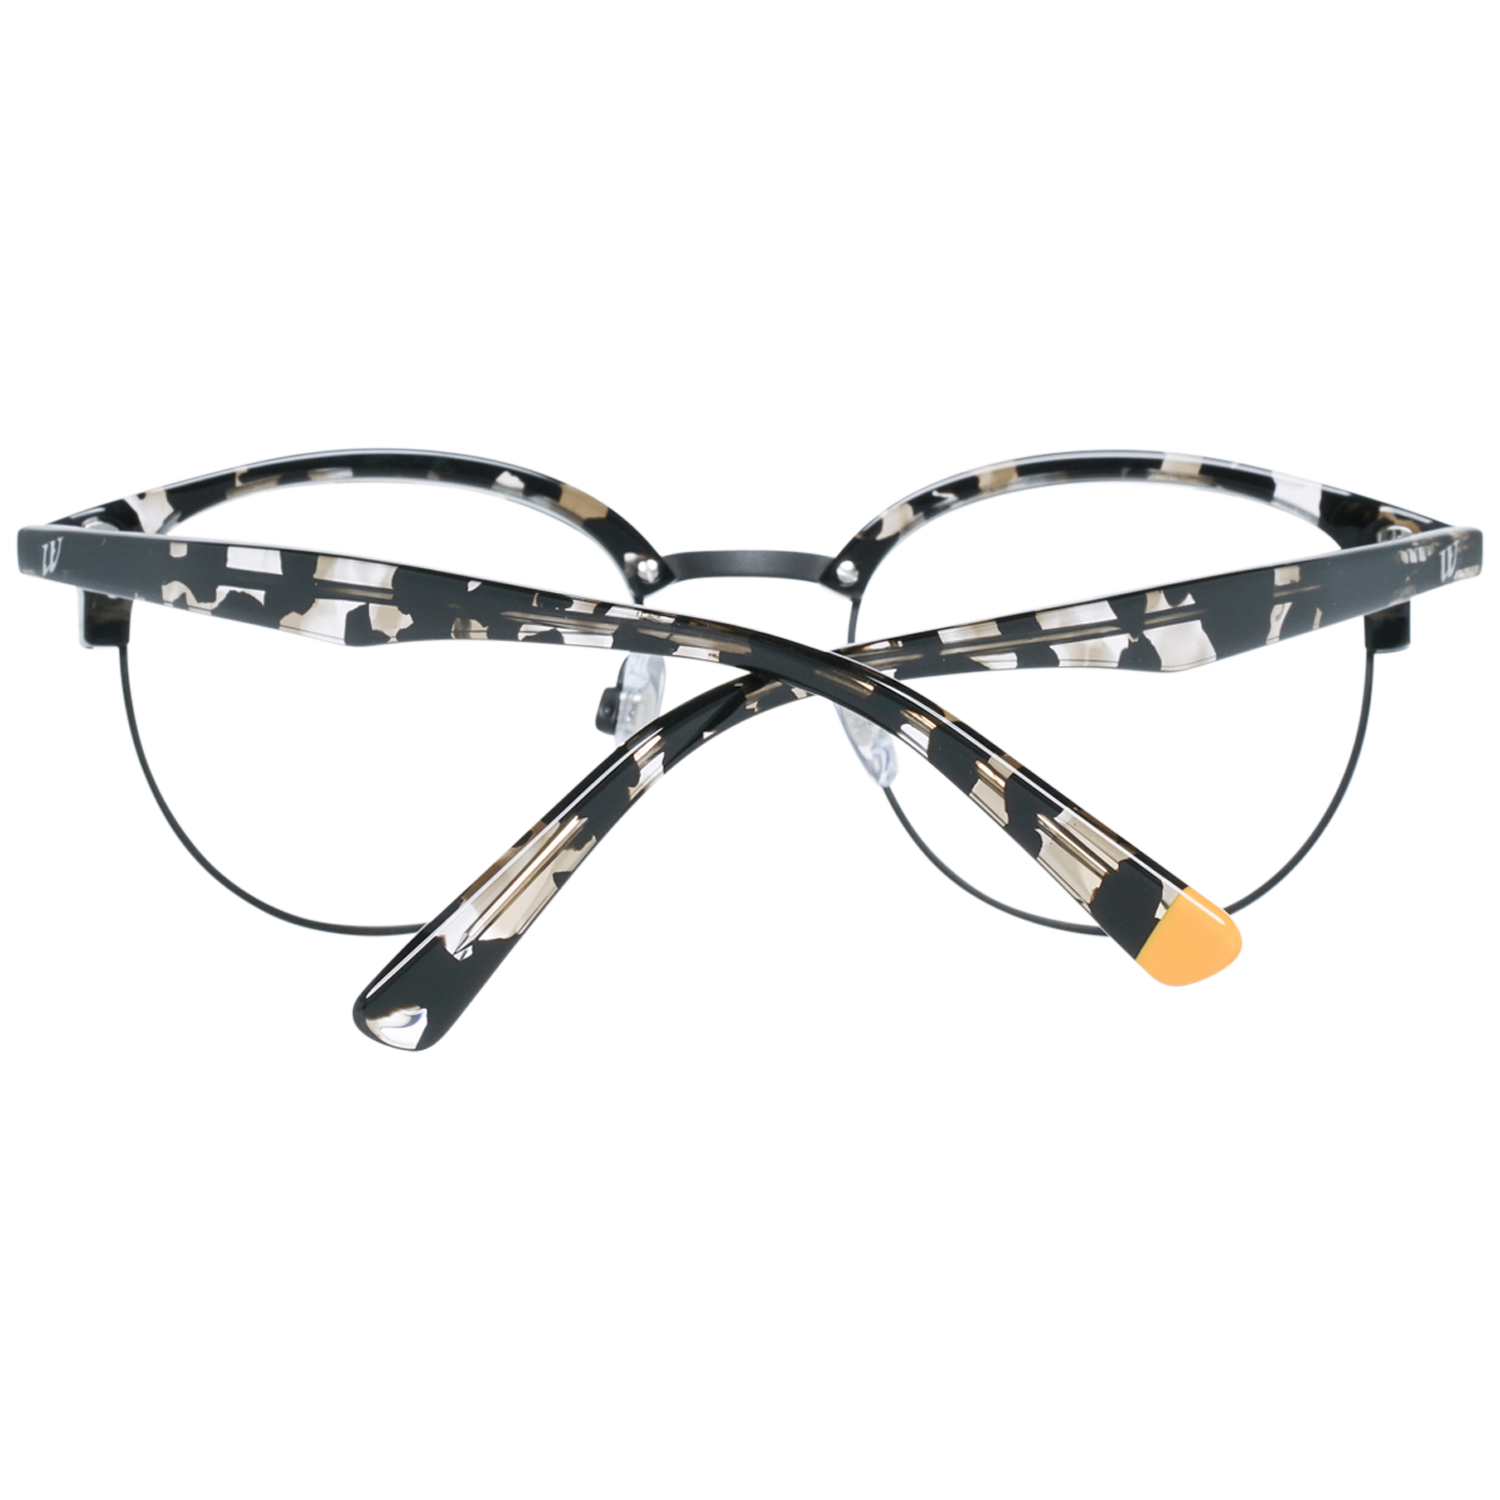 Web Frames Web Optical Frame WE5225 002 49 Eyeglasses Eyewear UK USA Australia 